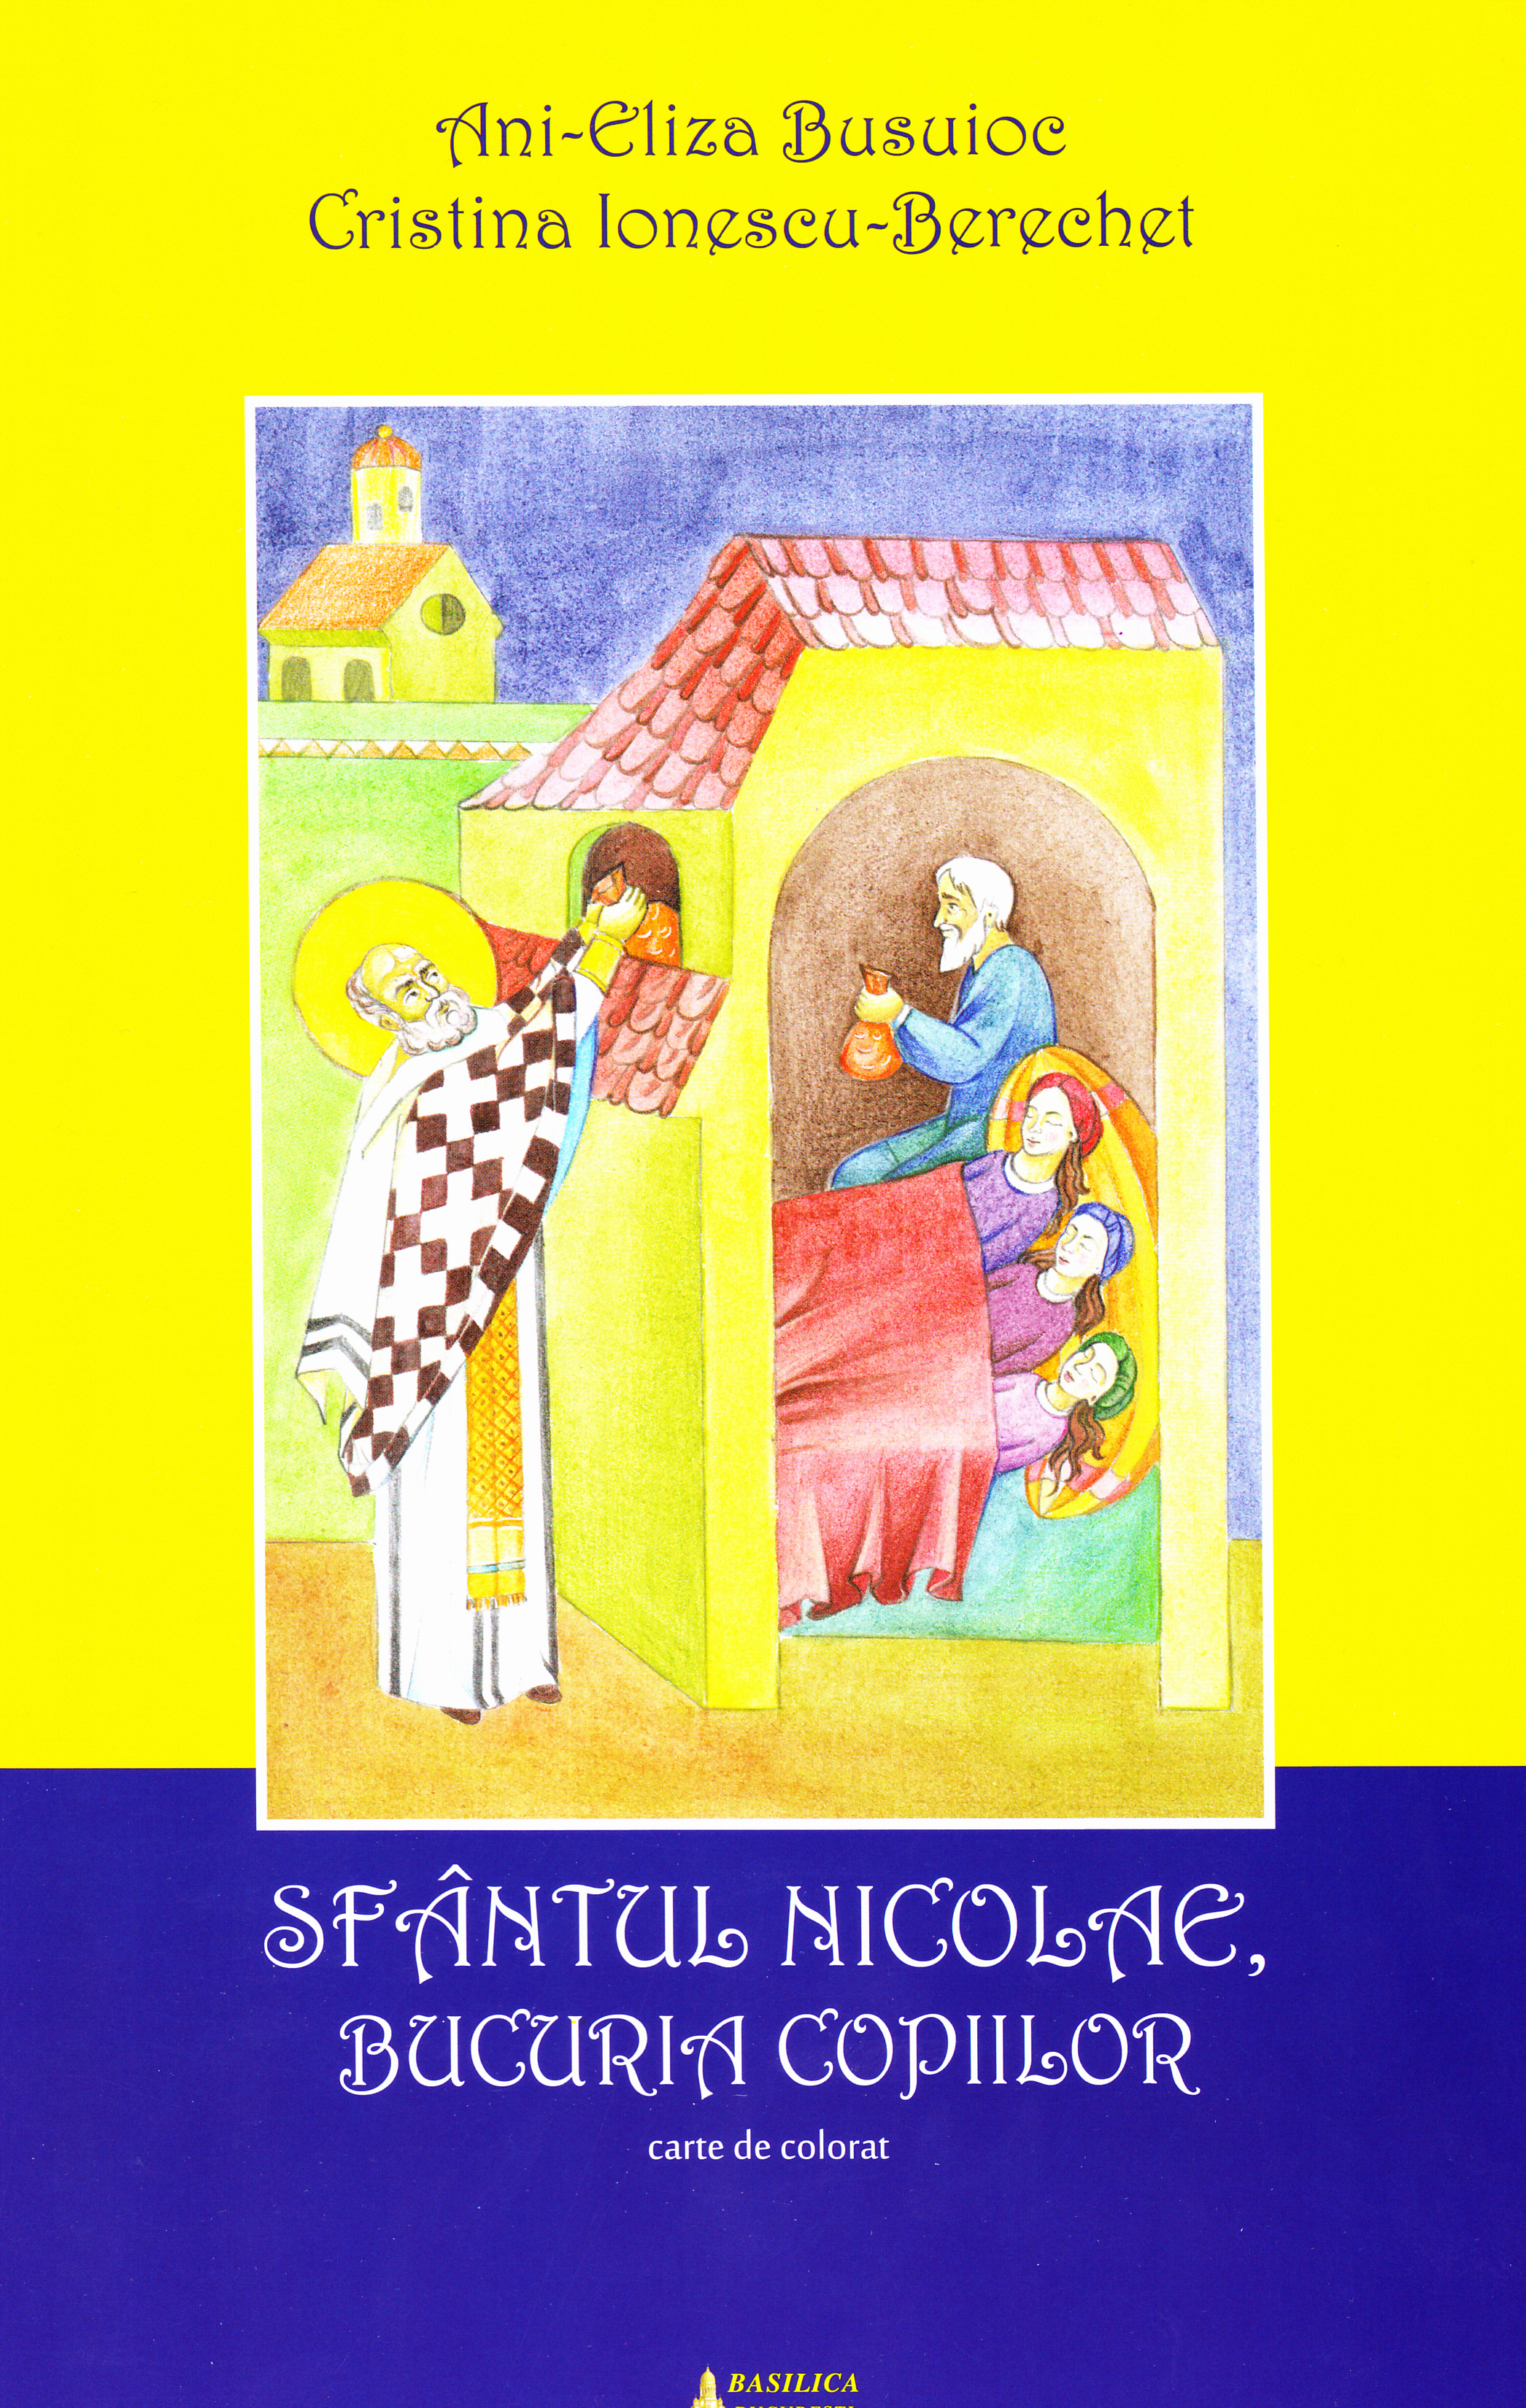 Sfantul Nicolae, Bucuria copiilor - Ani-Eliza Busuioc, Cristina Ionescu-Berechet